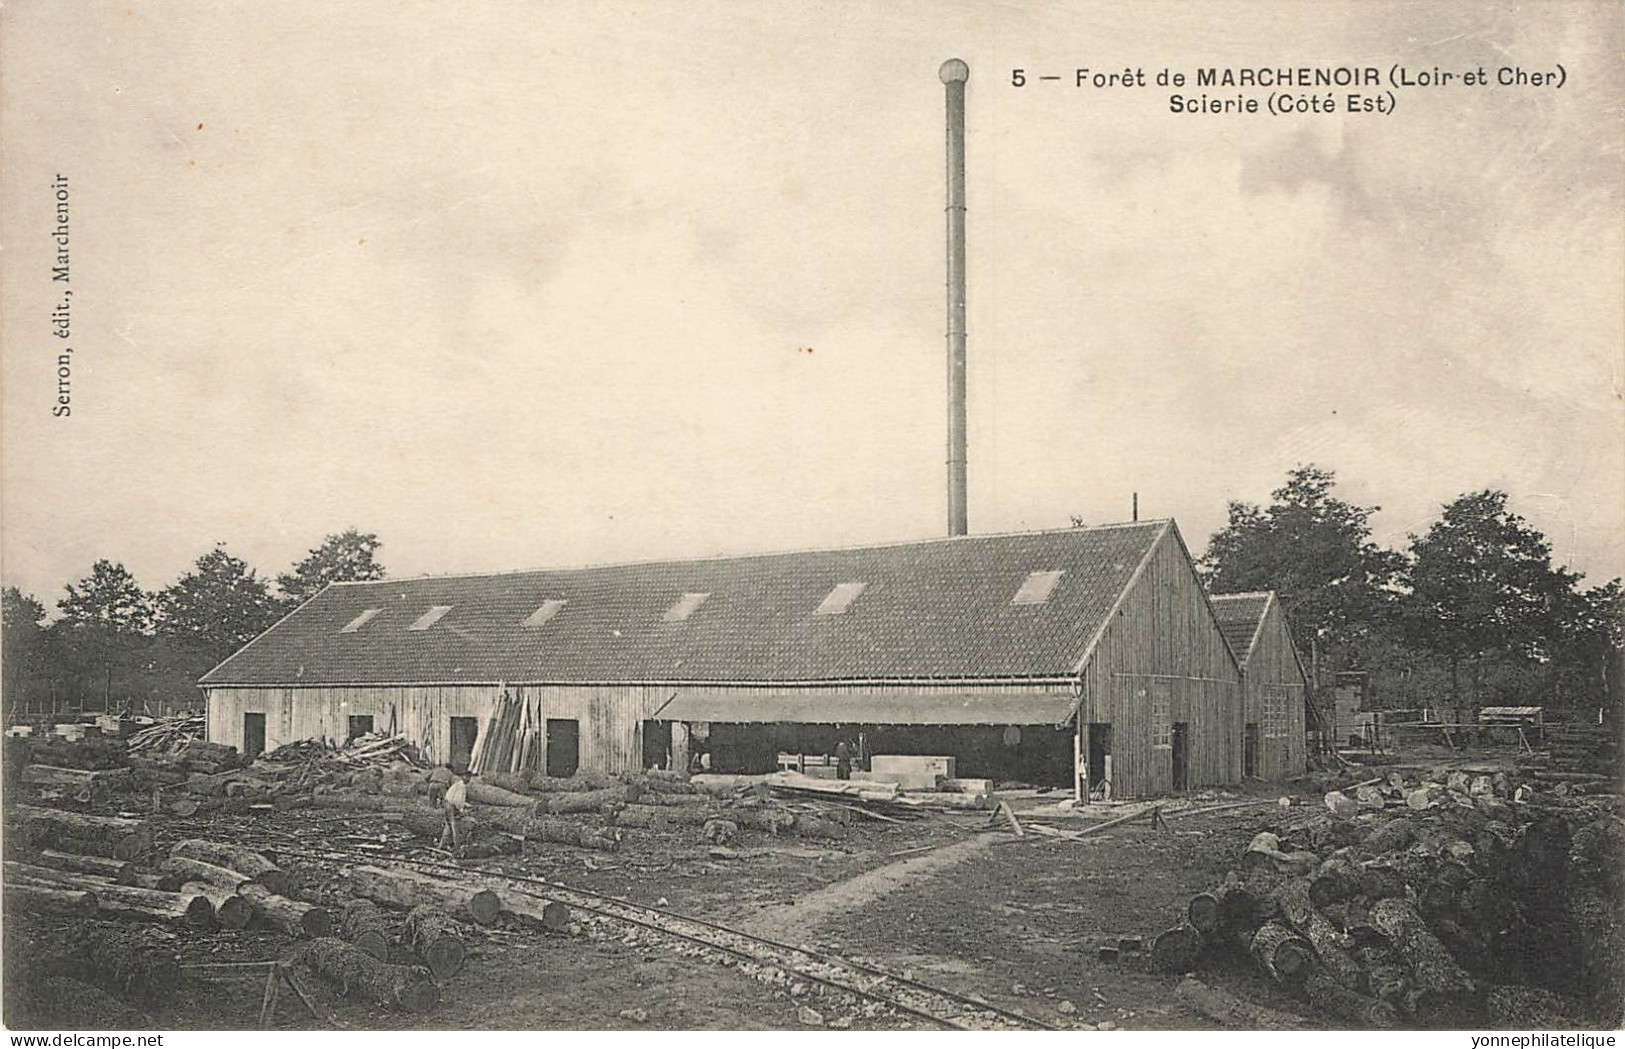 41 - LOIR ET CHER - MARCHENOIR - Forêt, Scierie, Bois - Beau Cliché Serron - 10638 - Marchenoir